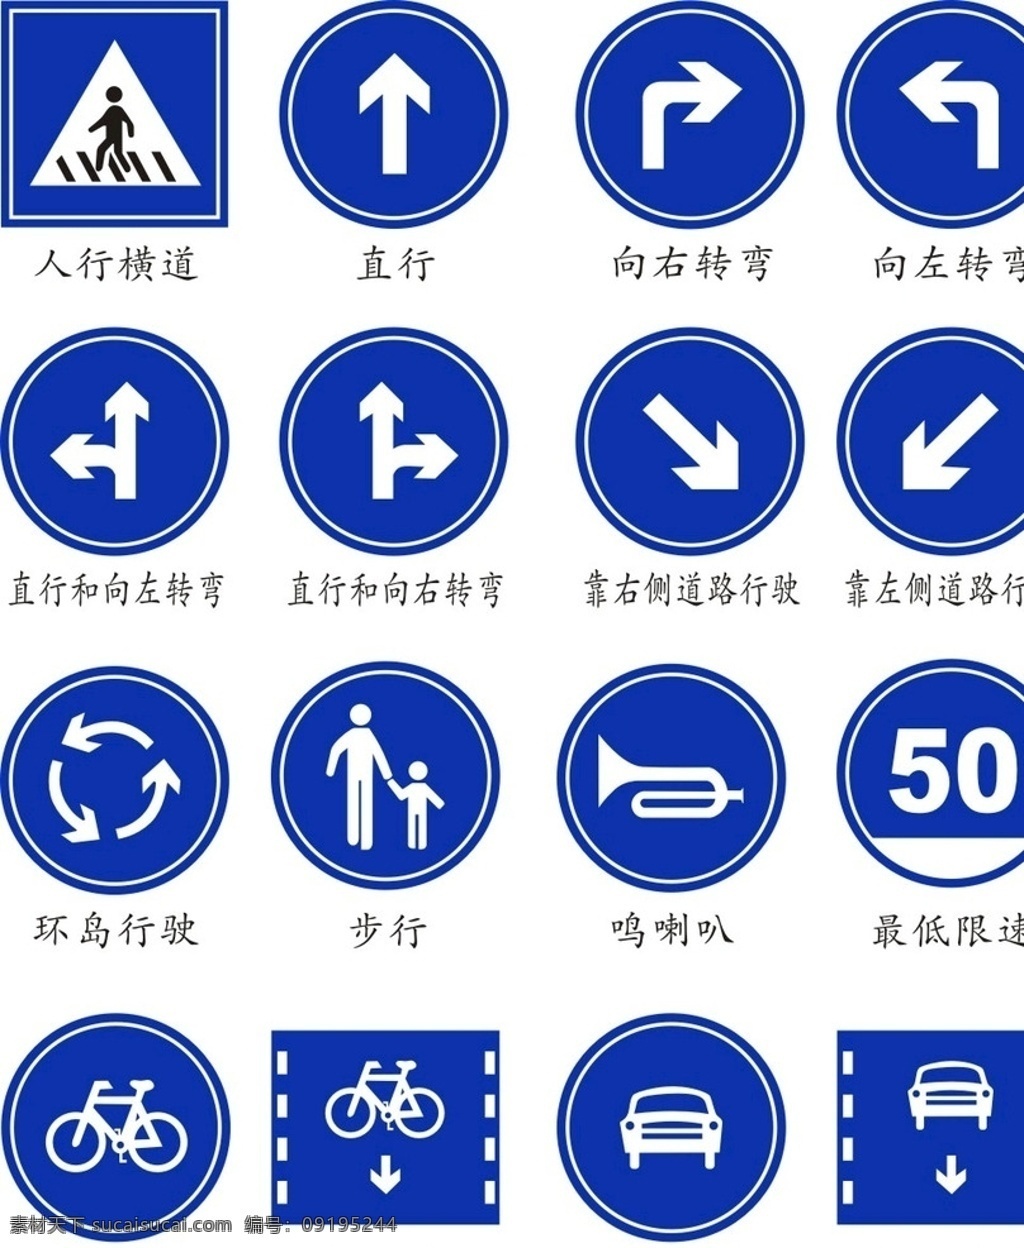 公共标识 图标 公共交通标识 图标矢量素材 标牌 指示牌 标志 标志图标 公共标识标志